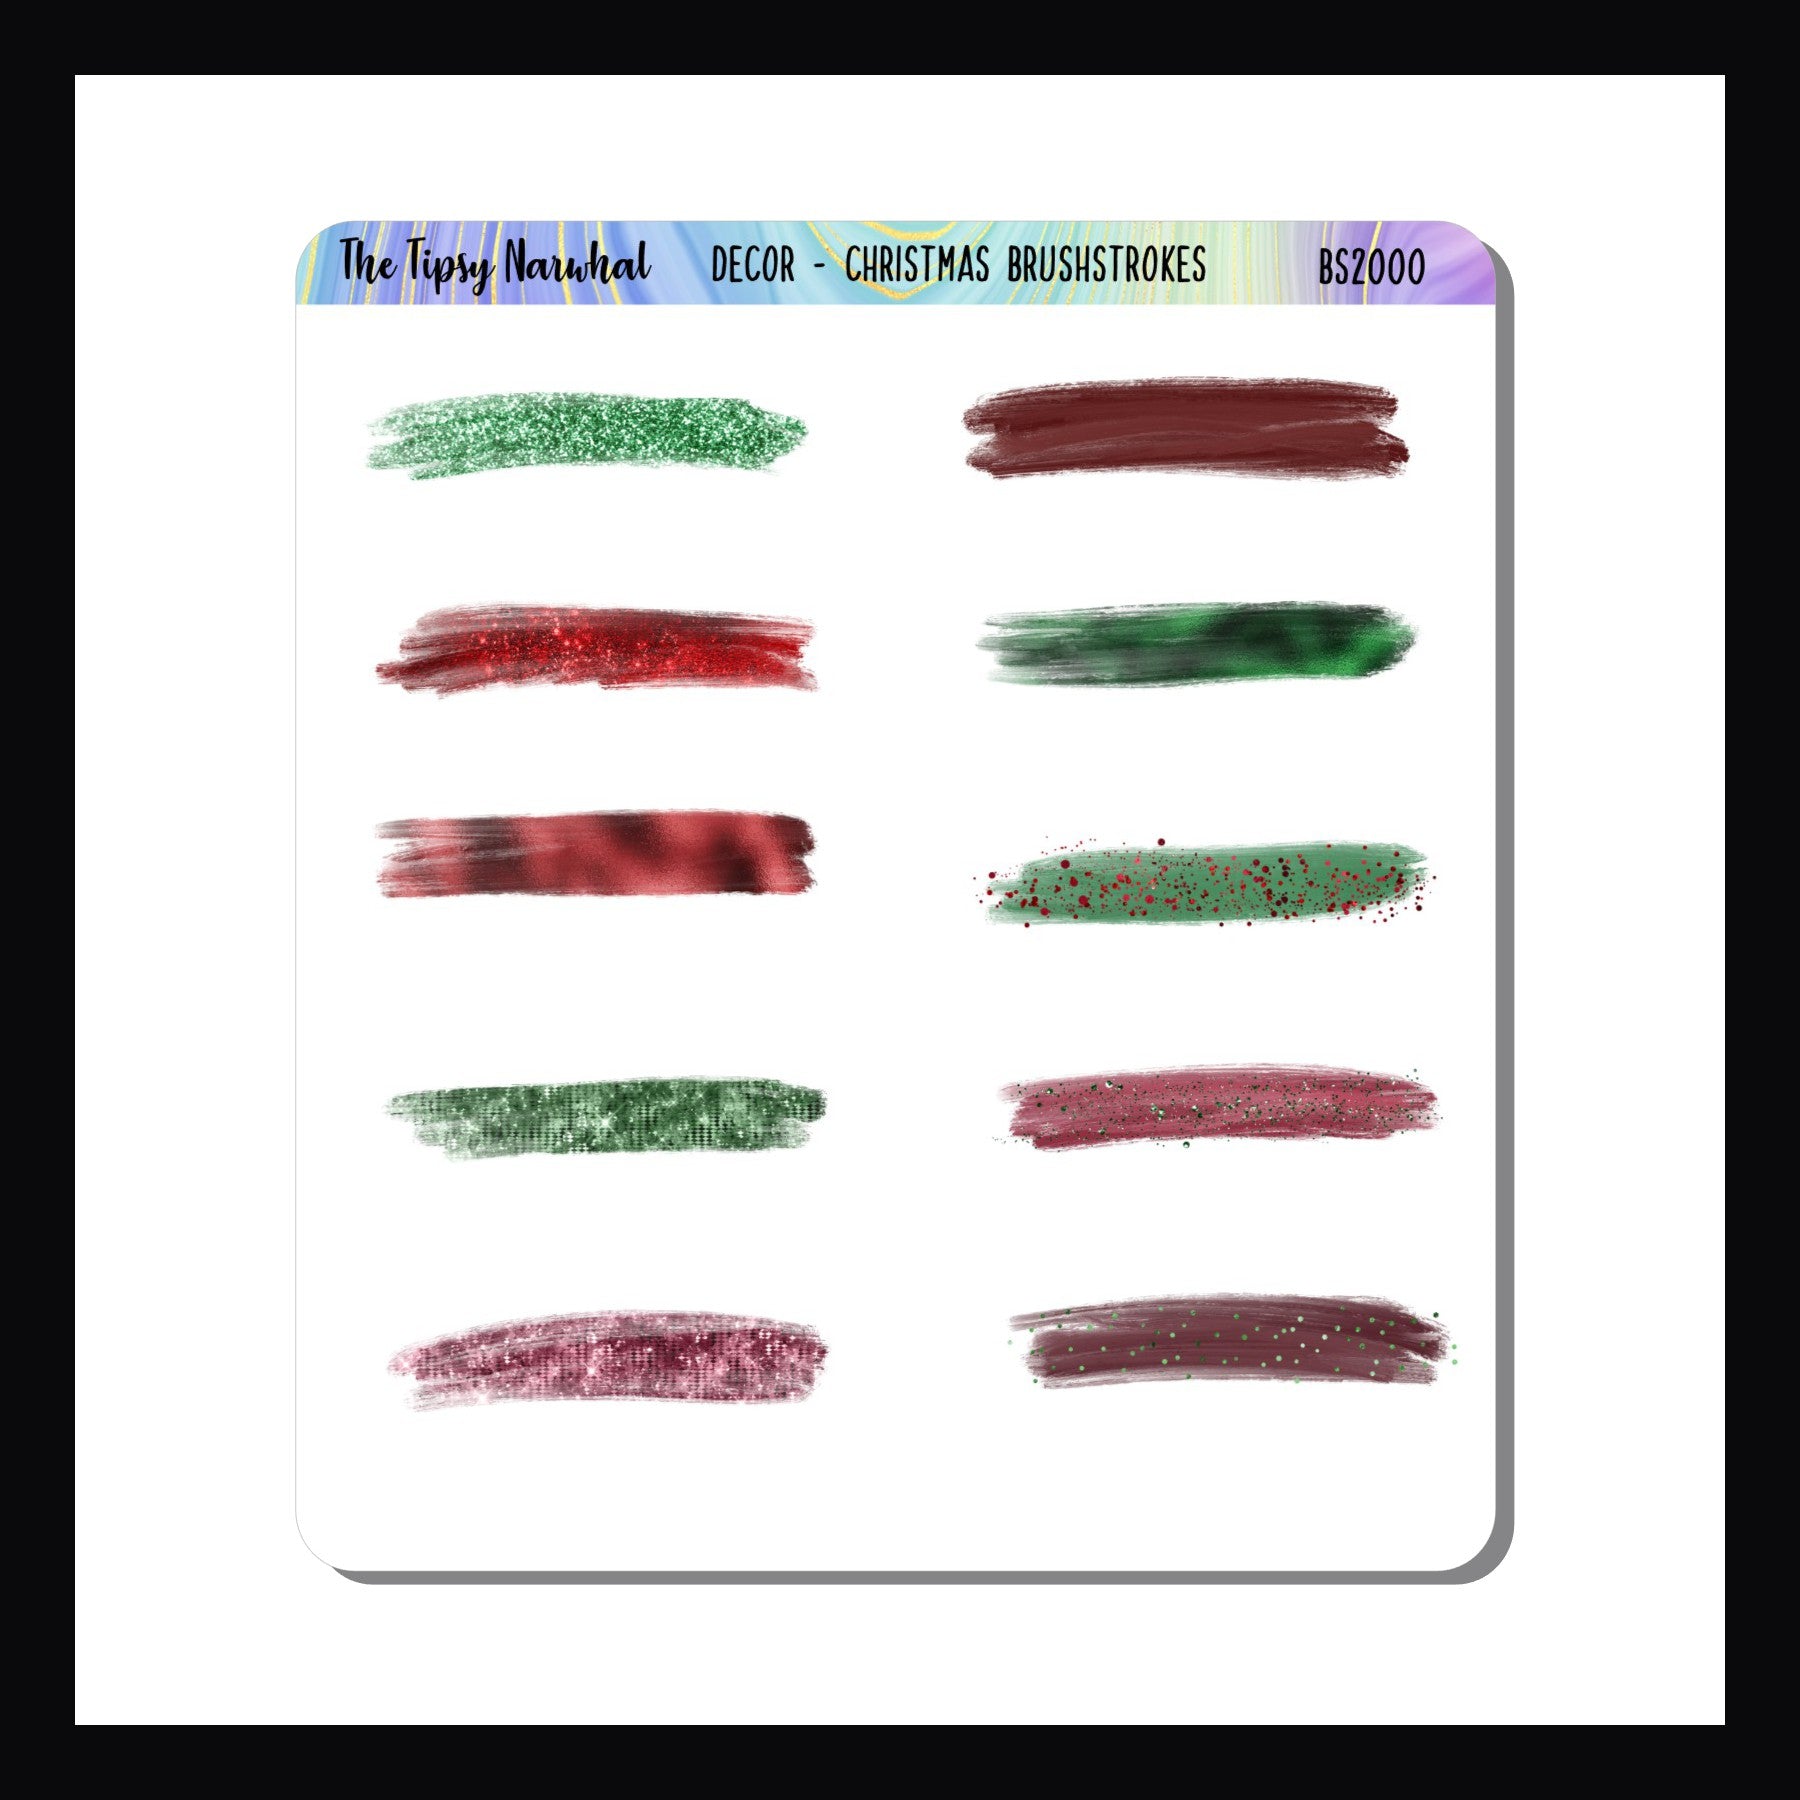 Christmas Brushstrokes Sticker Sheet, brushstroke stickers, red brushstrokes, red glitter, metallic red, Green brushstrokes, metallic green, glitter green, glitter stickers, washi stickers